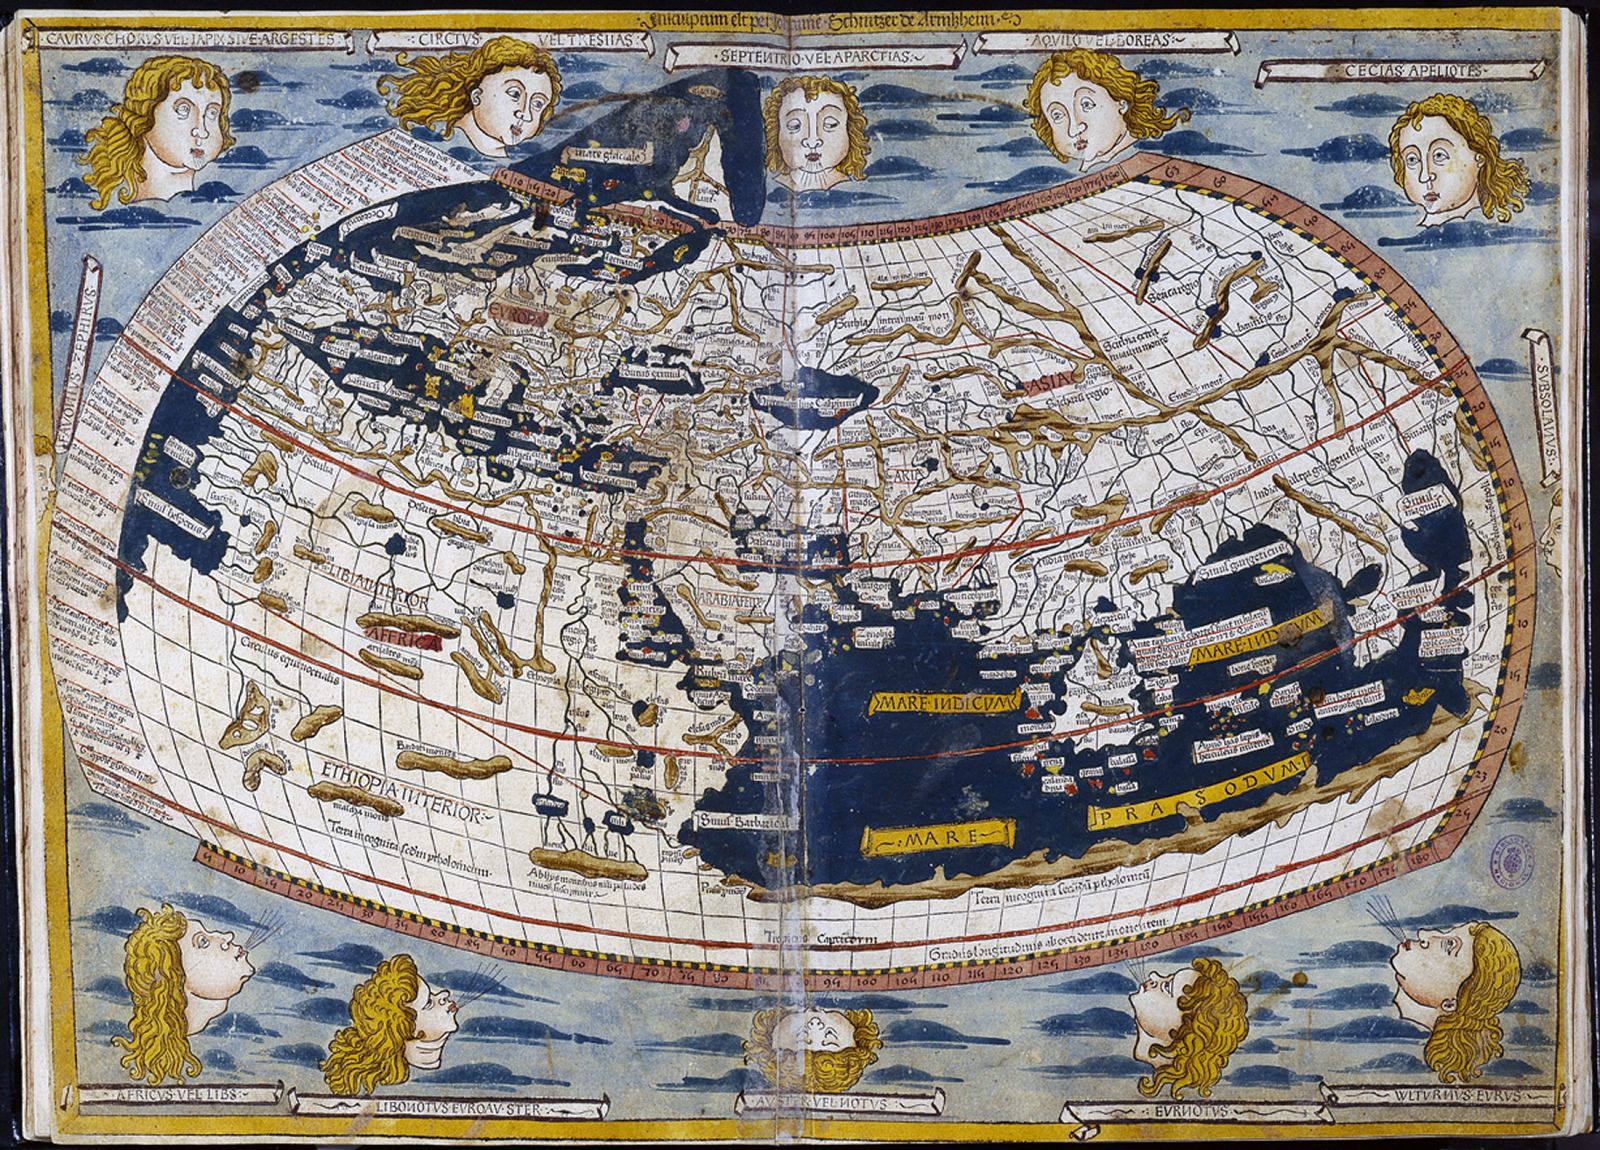 Mapa del mundo de Ptolomeo, datado en el siglo XV, y que fue robado en agosto de 2007 de la Biblioteca Nacional de Madrid, aunque fueron recuperados posteriormente.